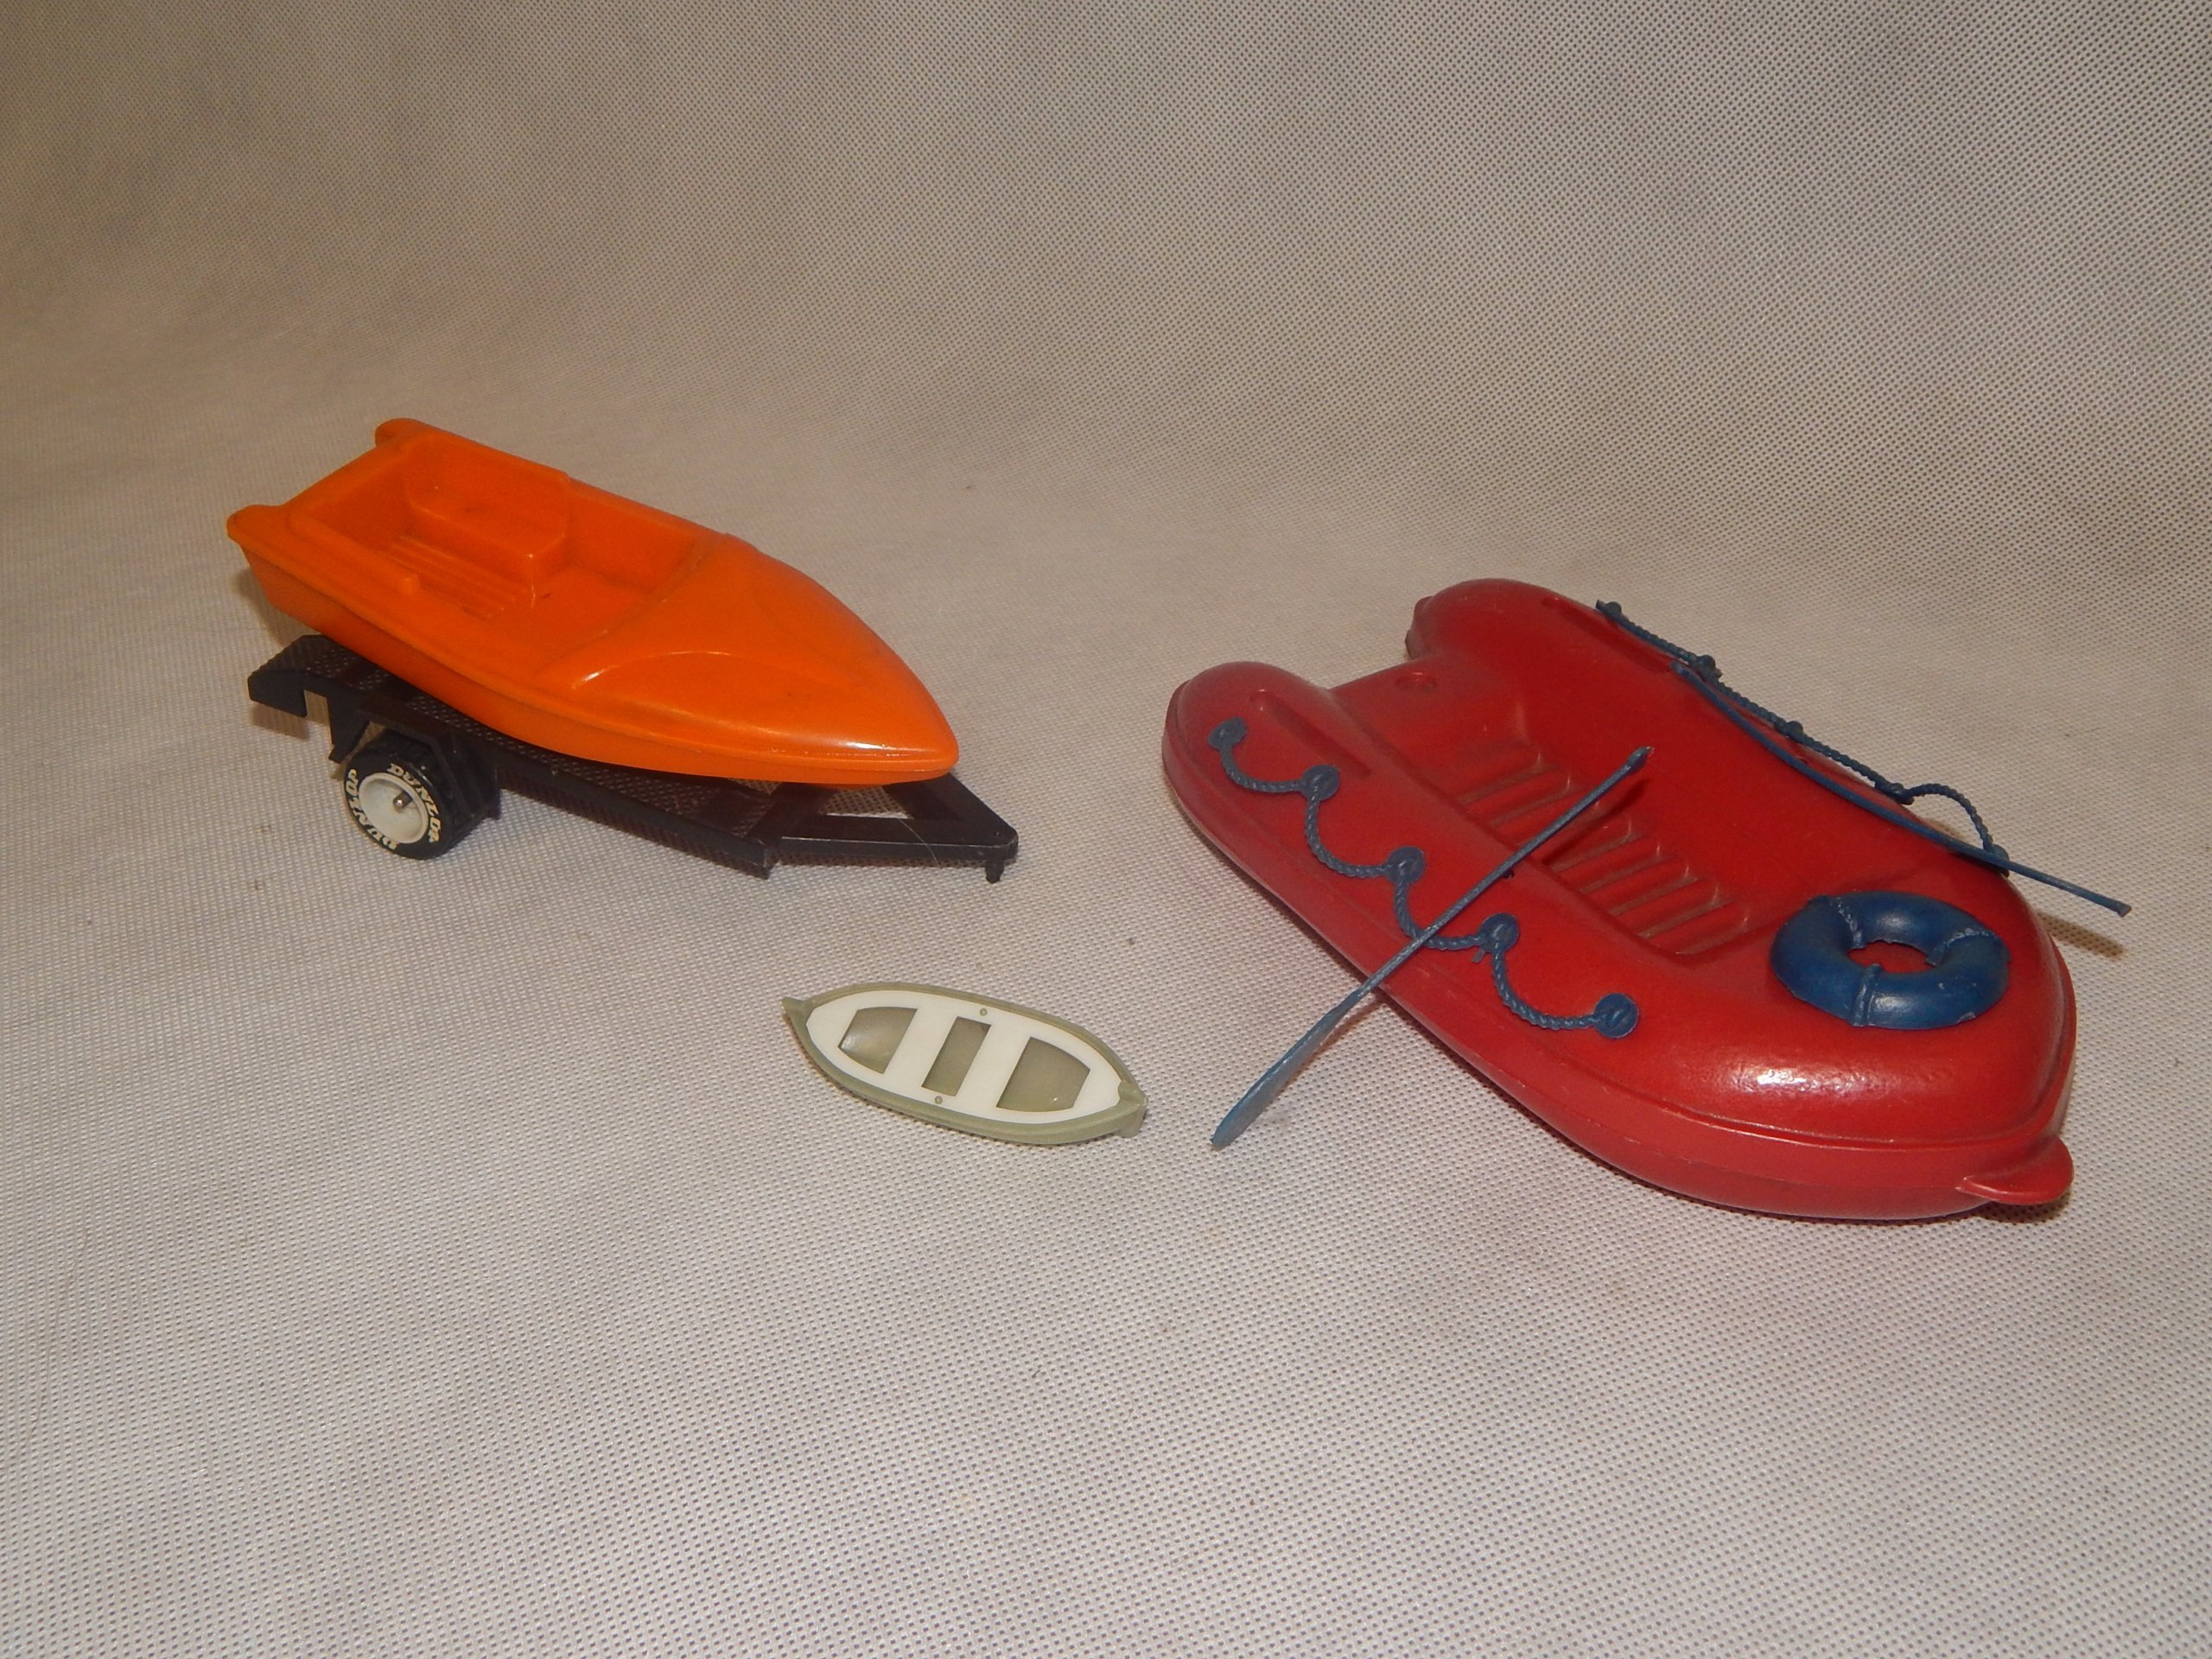 Stare Zabawki Prlu Ponton łódka Z Przyczepką